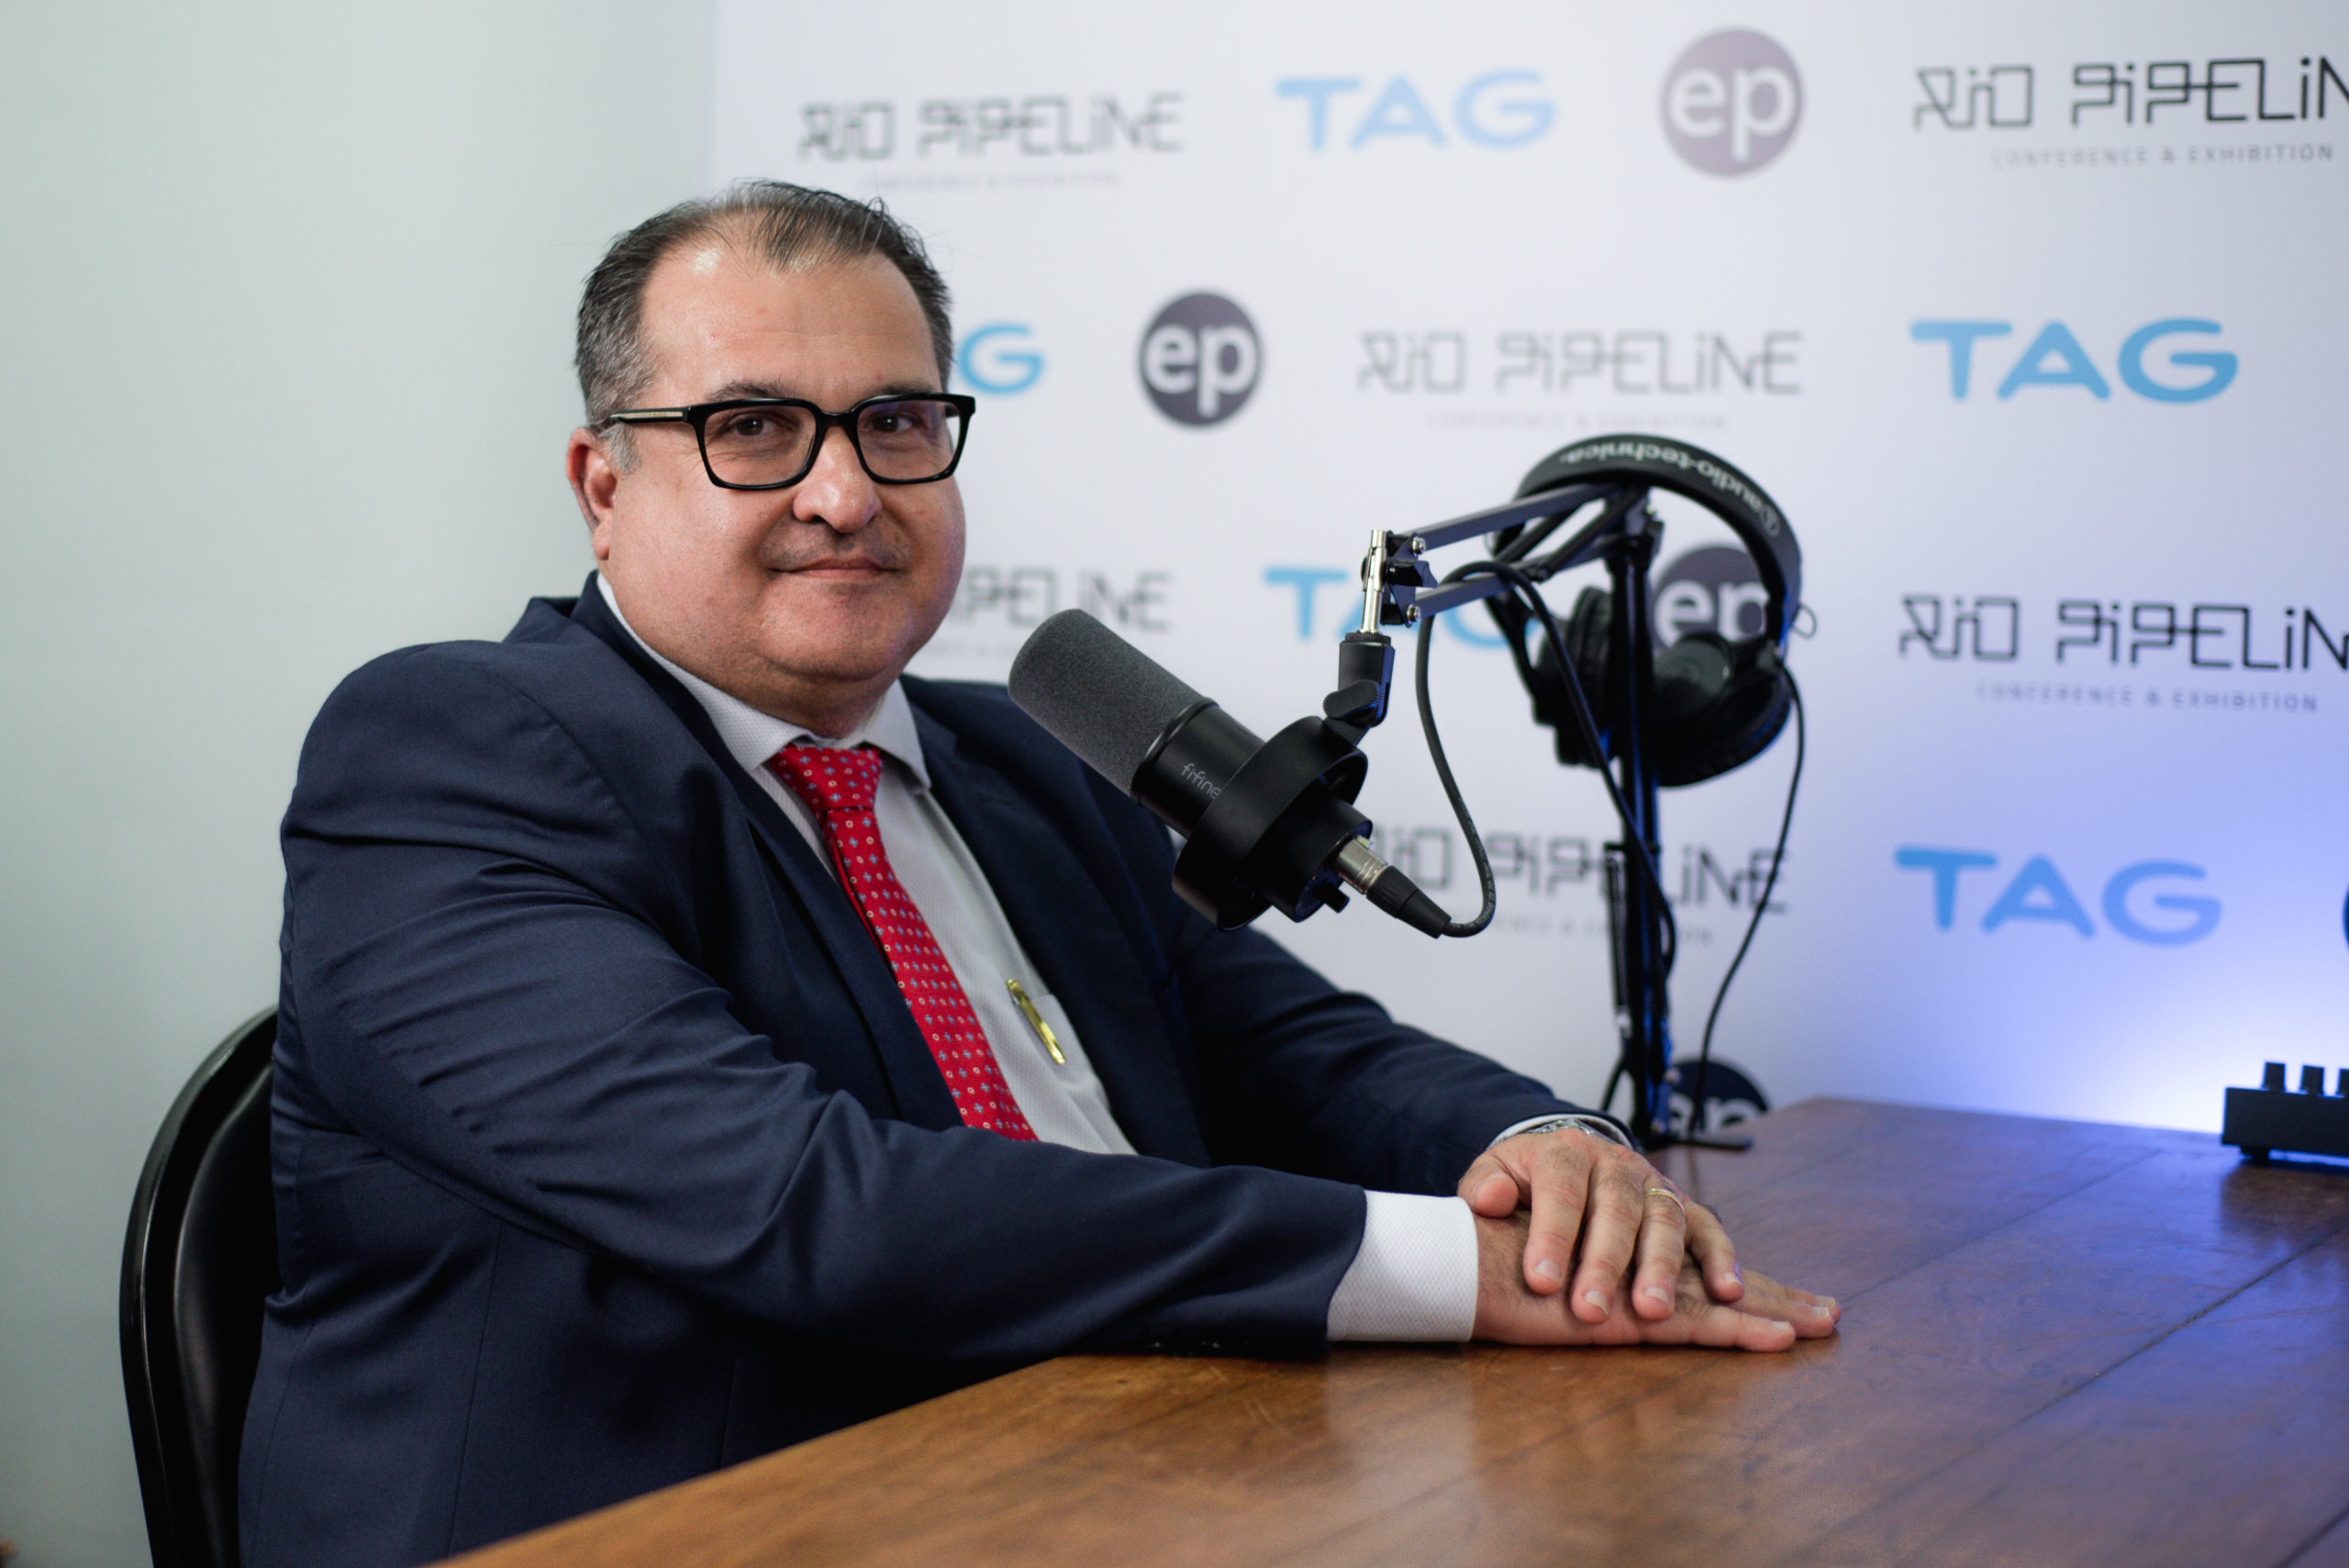 Secretário-executivo do Ministério dos Transportes, George Santoro, em entrevista ao estudio epbr durante a Rio Pipeline 2023. Crédito: Victor Cury/epbr